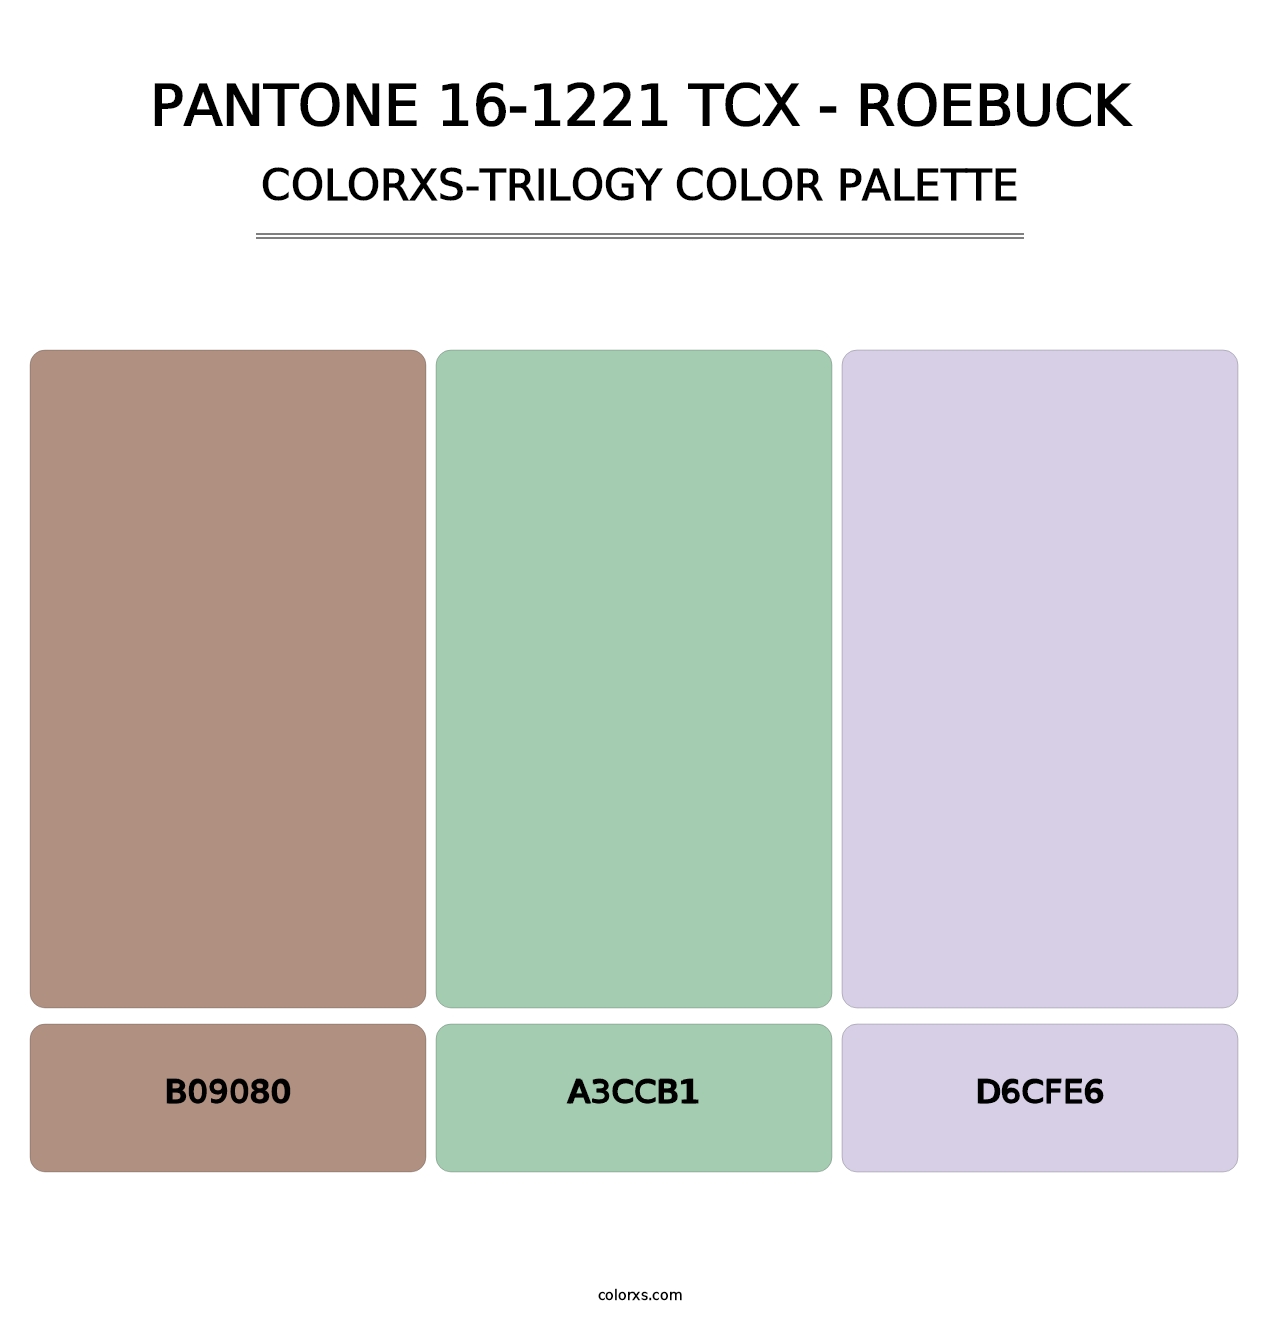 PANTONE 16-1221 TCX - Roebuck - Colorxs Trilogy Palette